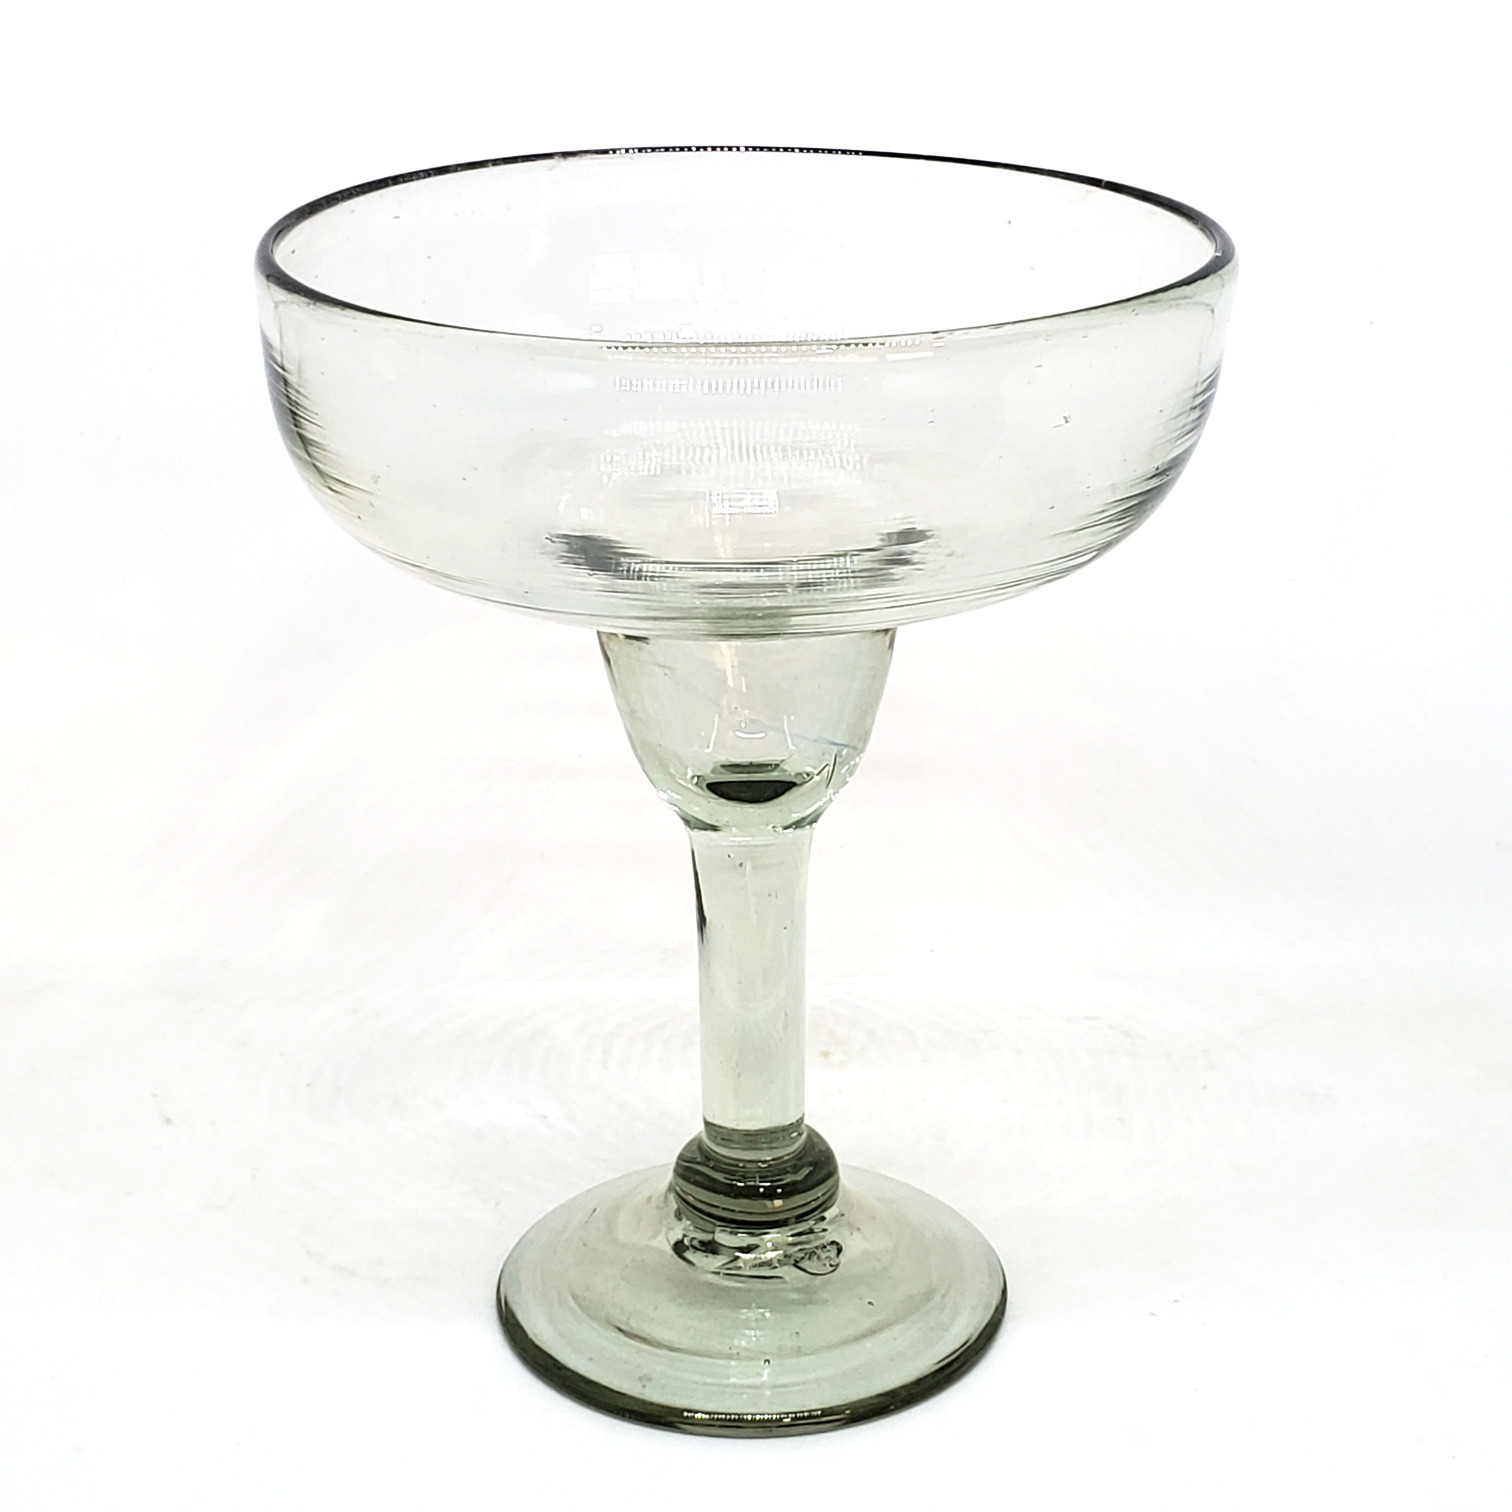 Novedades / Copa Margarita Grande 14 oz Transparente (Juego de 4) / Para cualquier fan�tico de las margaritas, �ste juego de copas de vidrio soplado resaltar�n en su mesa.